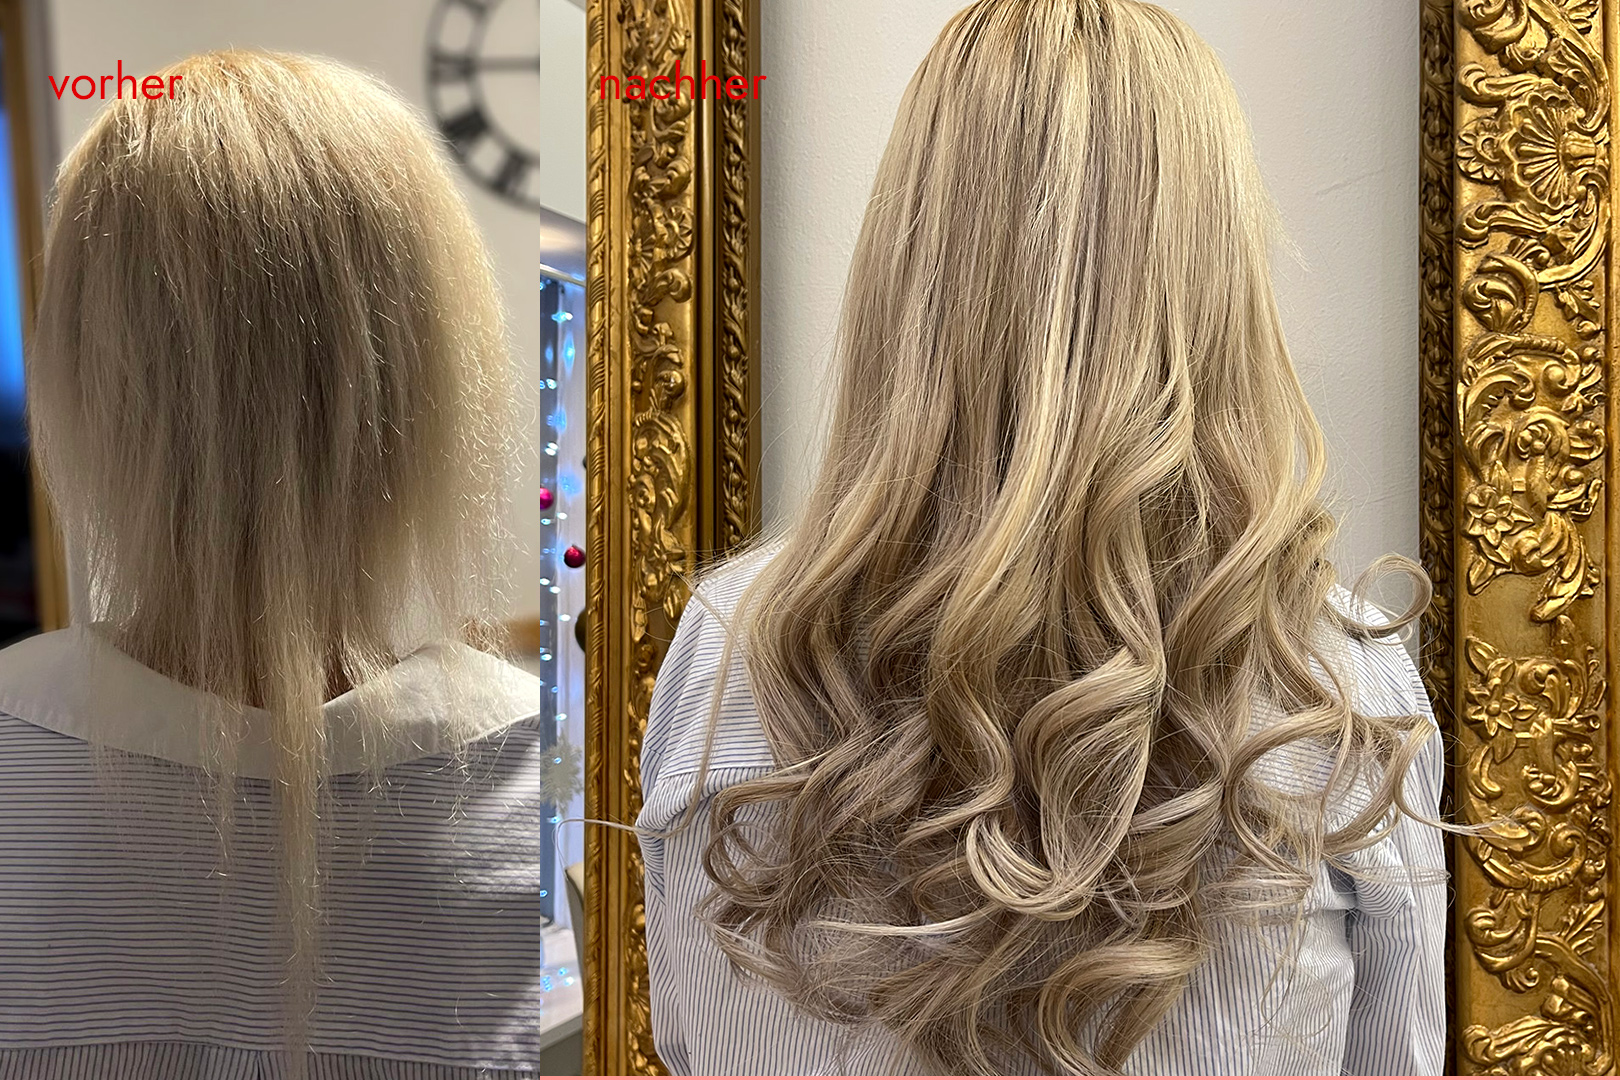 Angelicas Hair Extensions: Kundin vorher und nachher mit Haarverlängerung - balayage blond